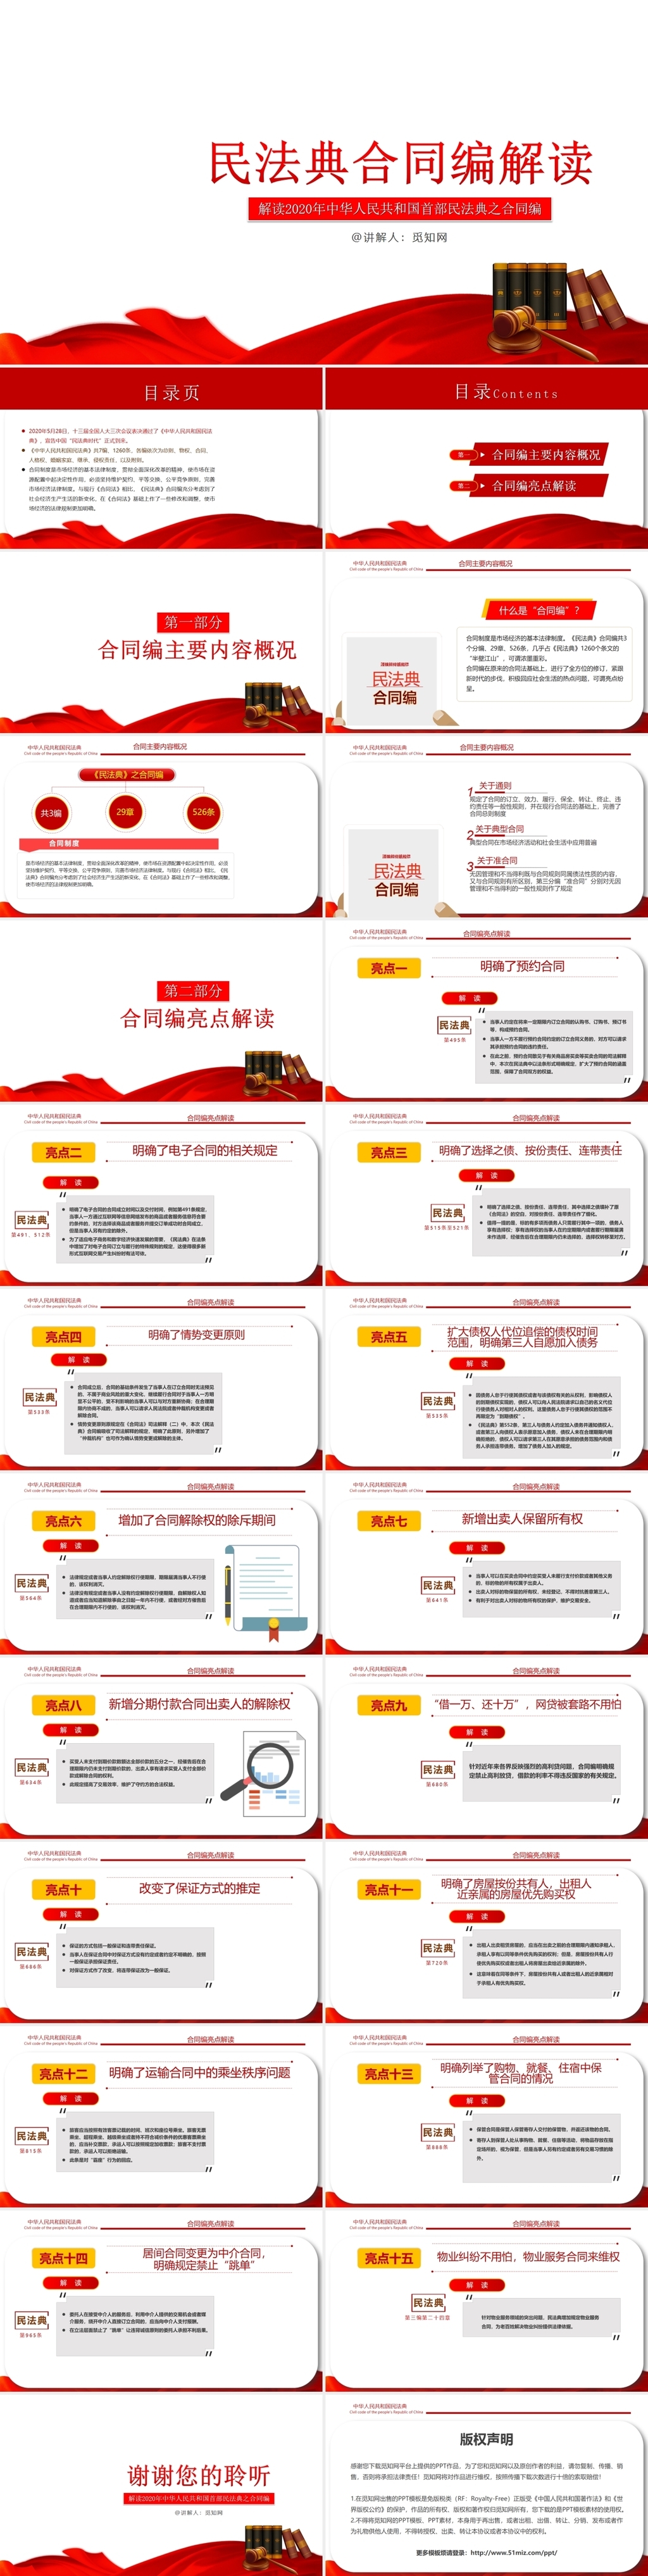 一图读懂《民法典》各编主要内容-主题宣传-天津市科学技术协会